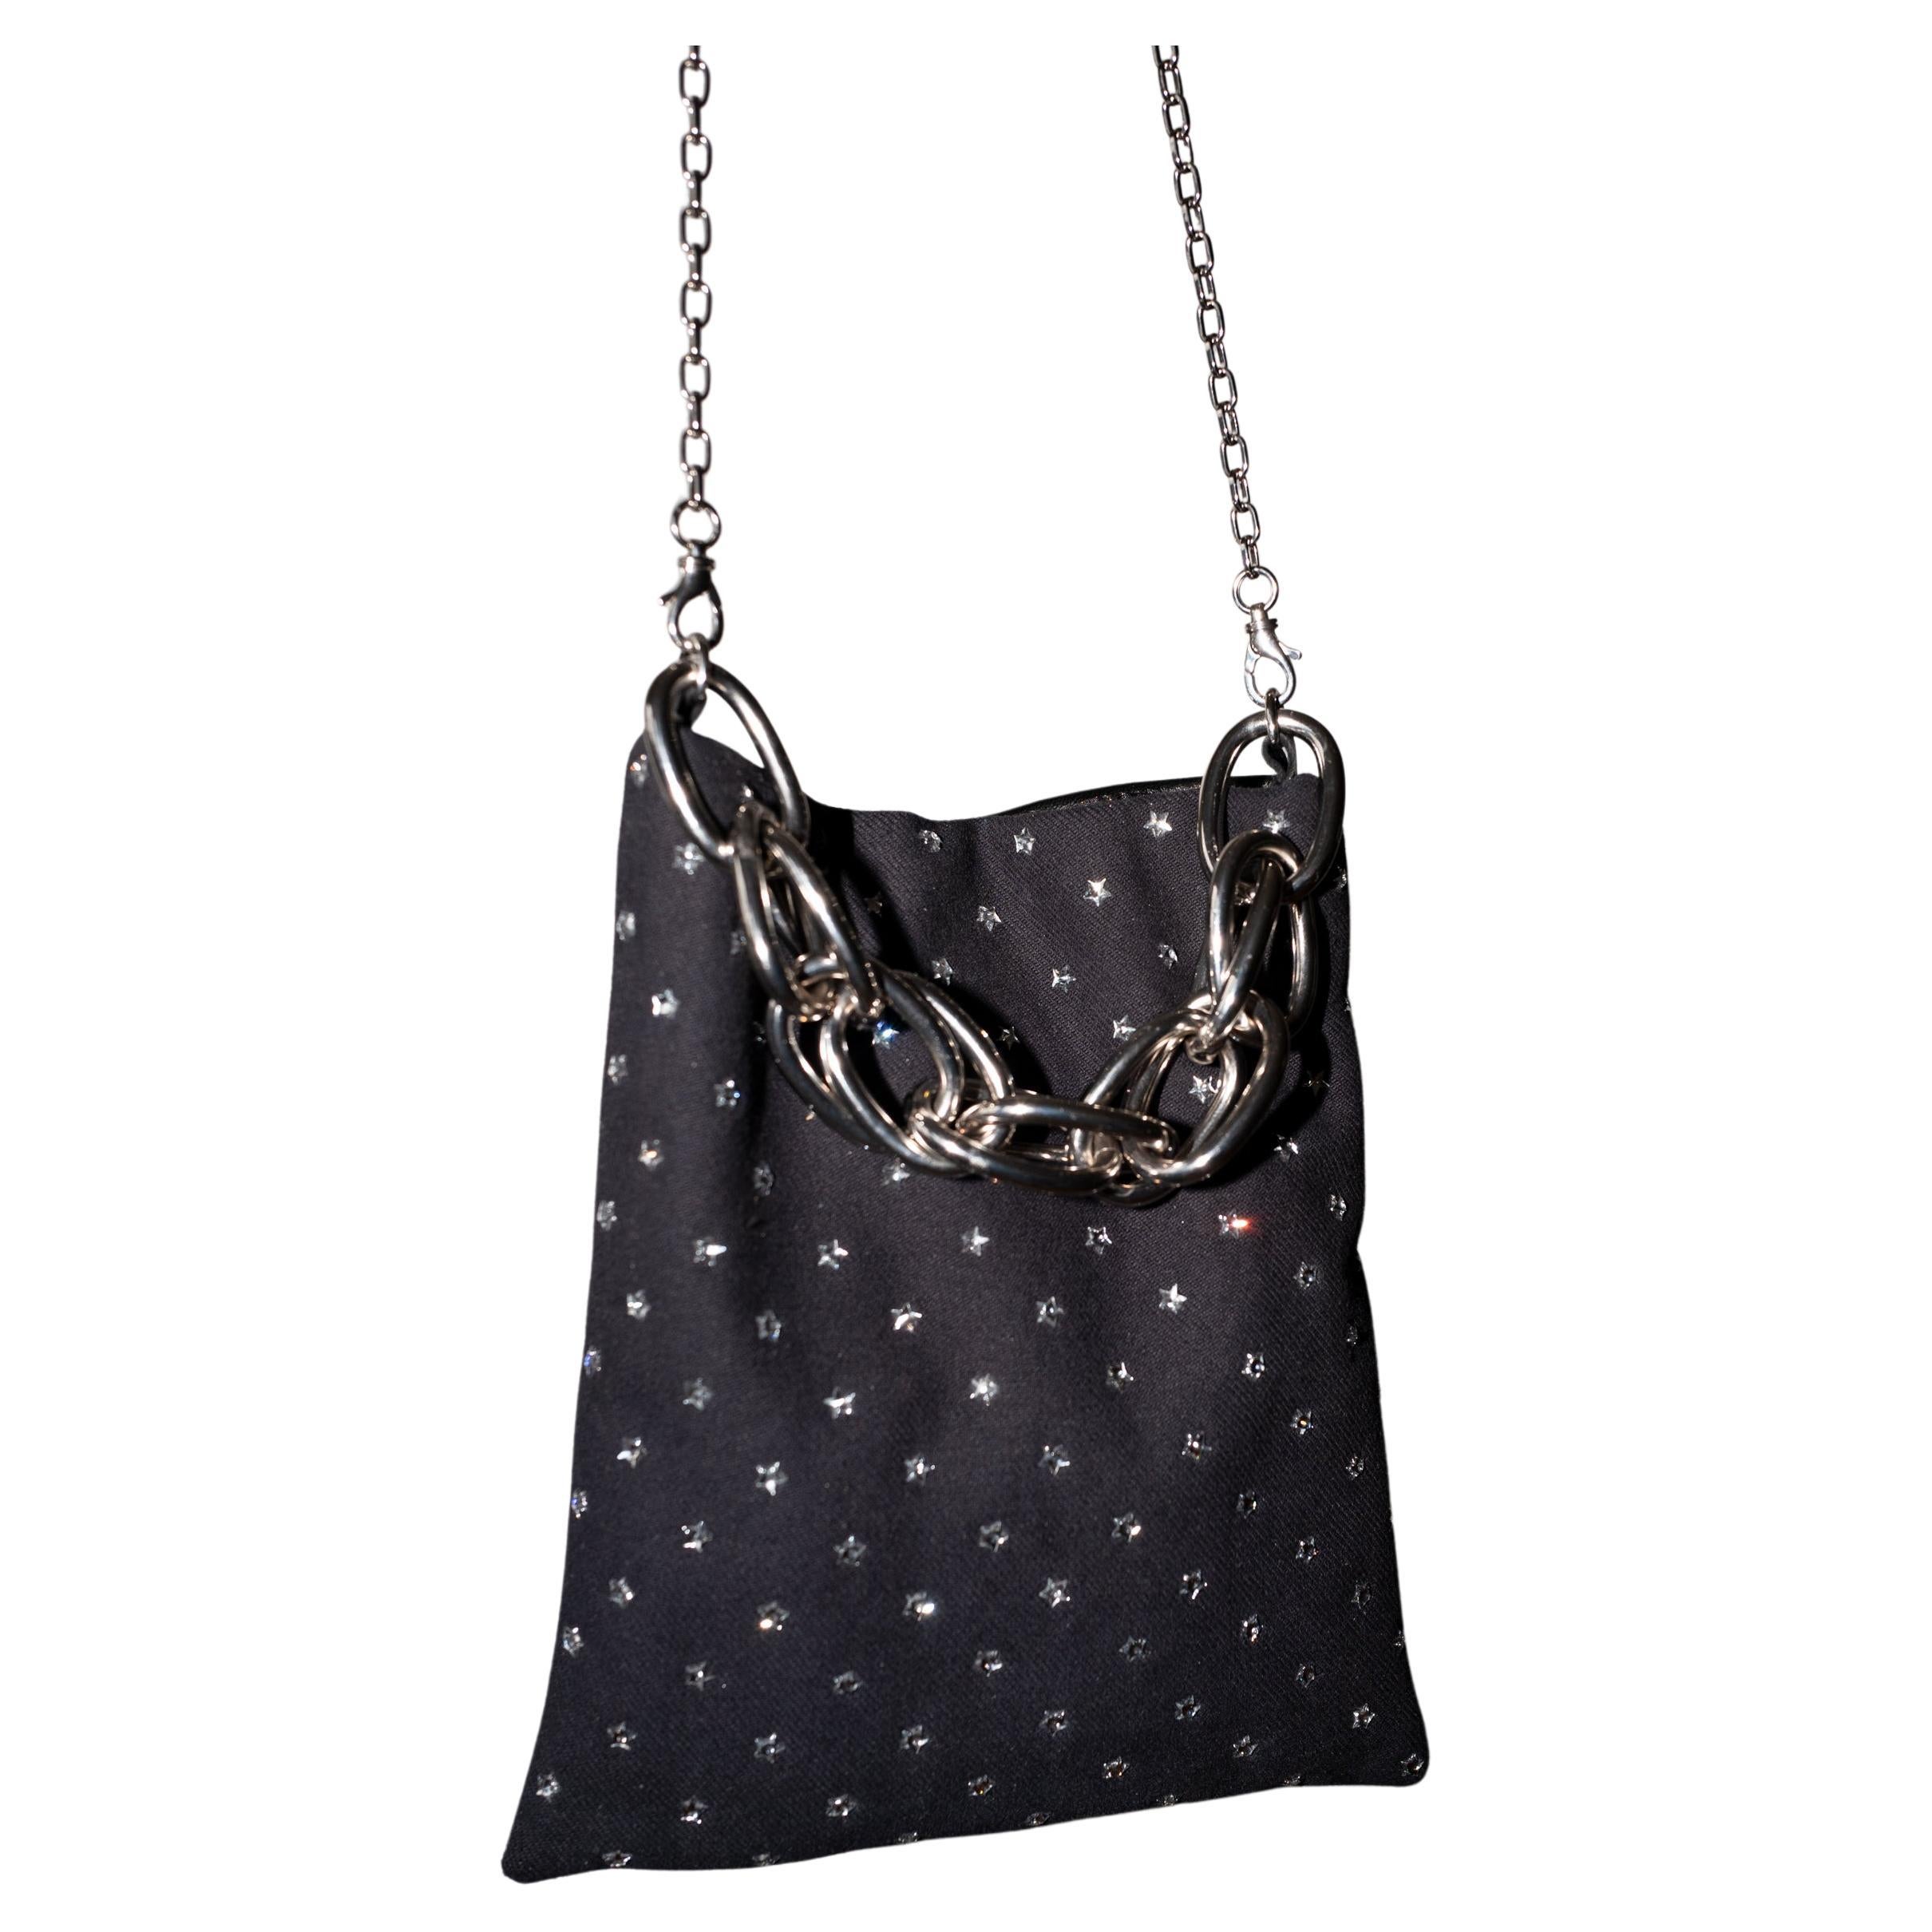 Crystal Star Embellished Black Evening Shoulder Bag Black Leather Chunky Chain For Sale